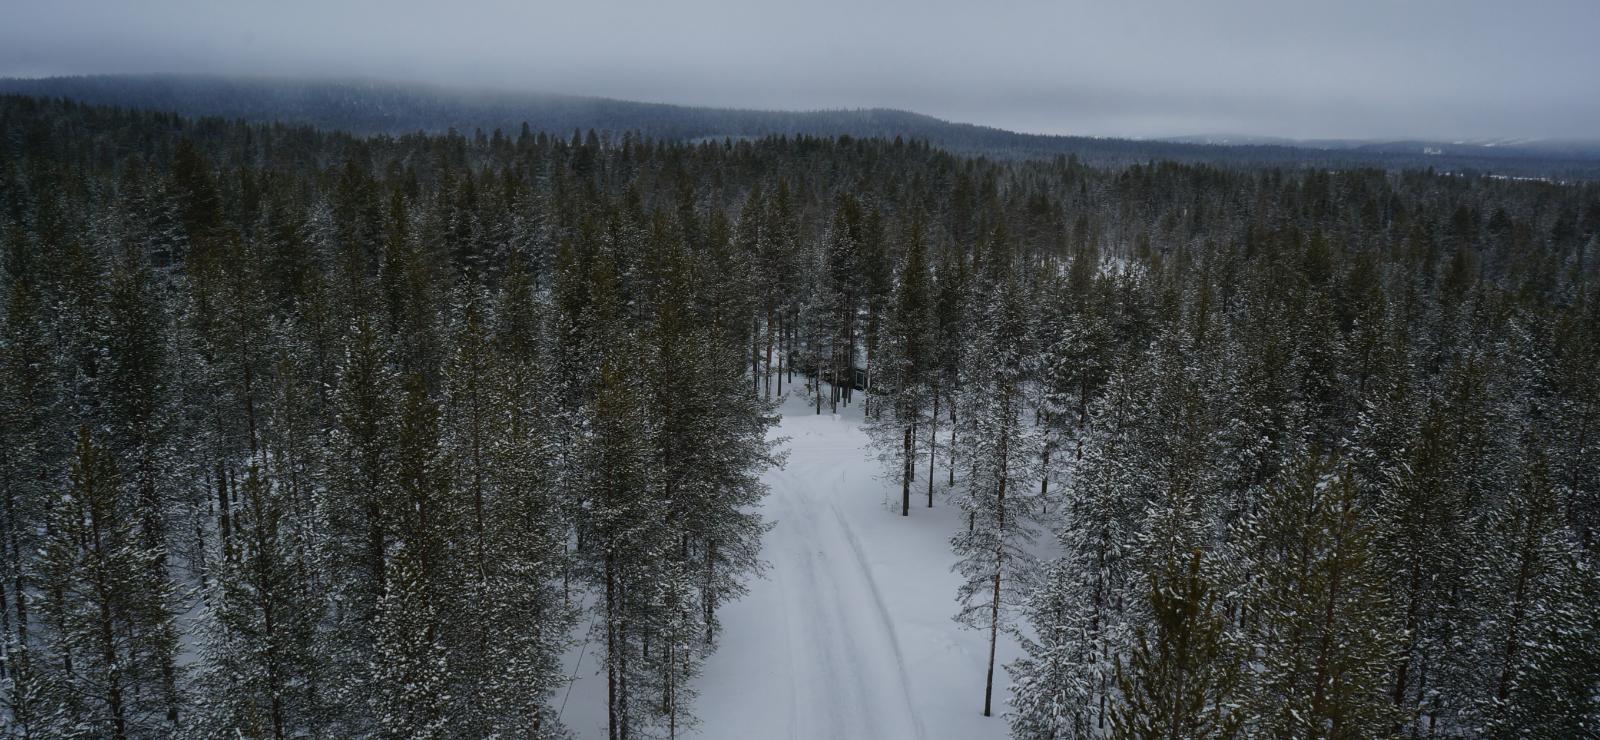 Talvipolku kulkee lumipeitteisessä metsässä. Taustalla kohoaa vaaramaisemat. Ilmakuva.